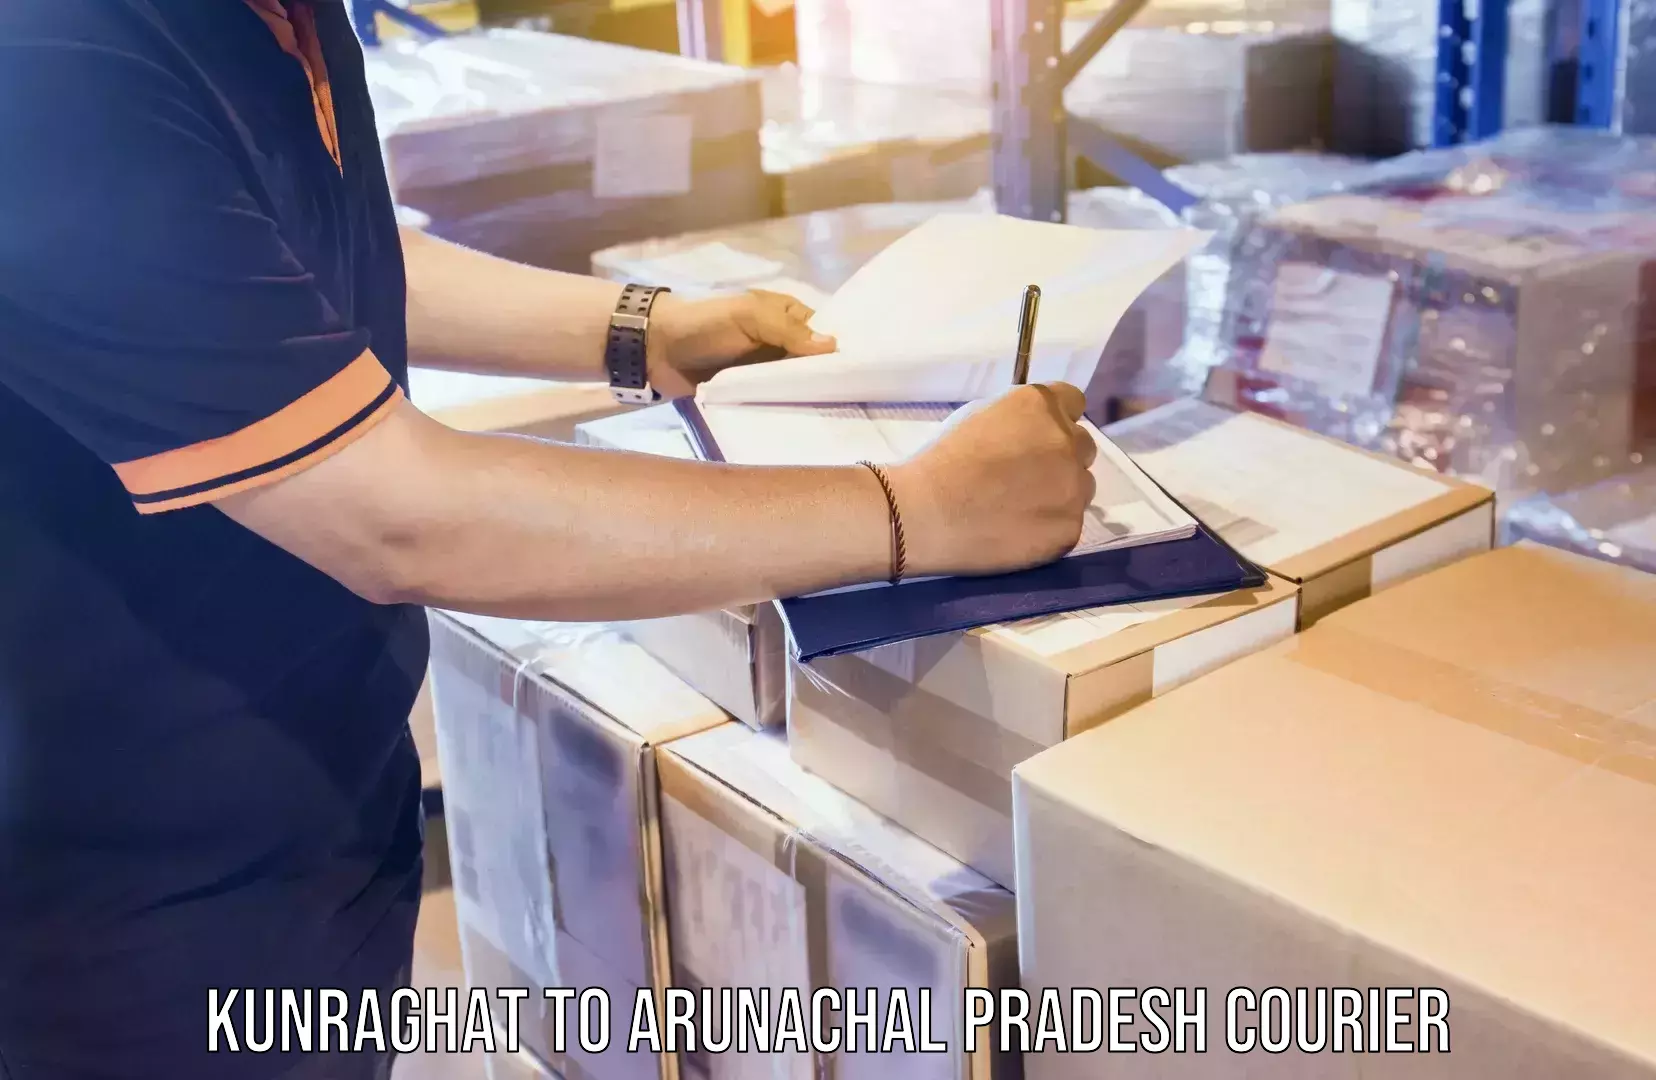 Furniture moving experts Kunraghat to Arunachal Pradesh